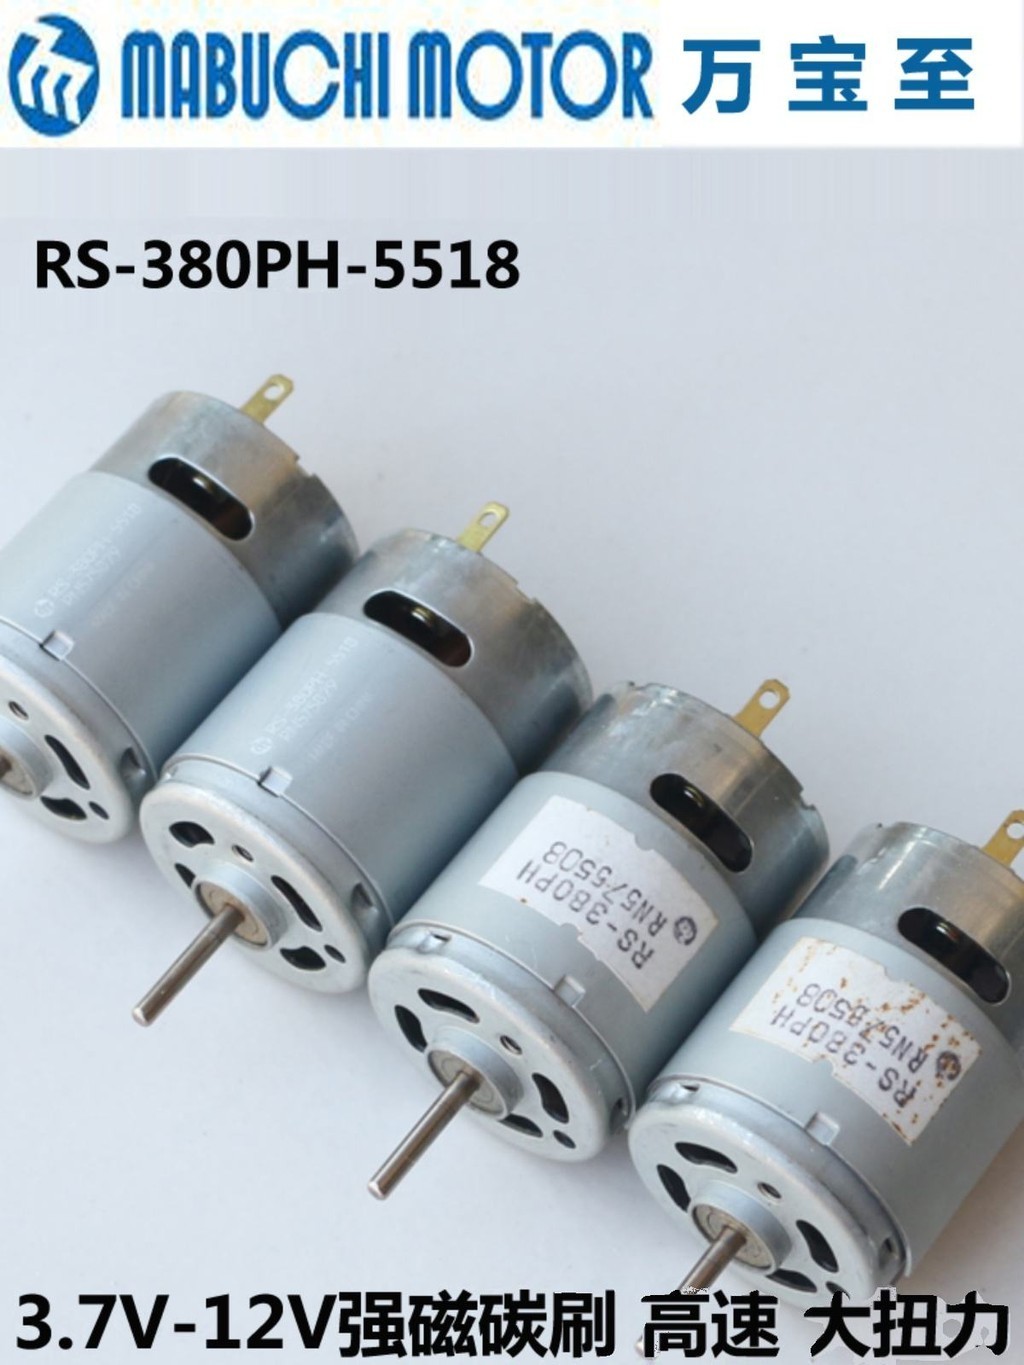 萬寶至RS-380PH-5518直流電機馬達 螺絲刀電鑽工具7.4V吸塵器3.7V